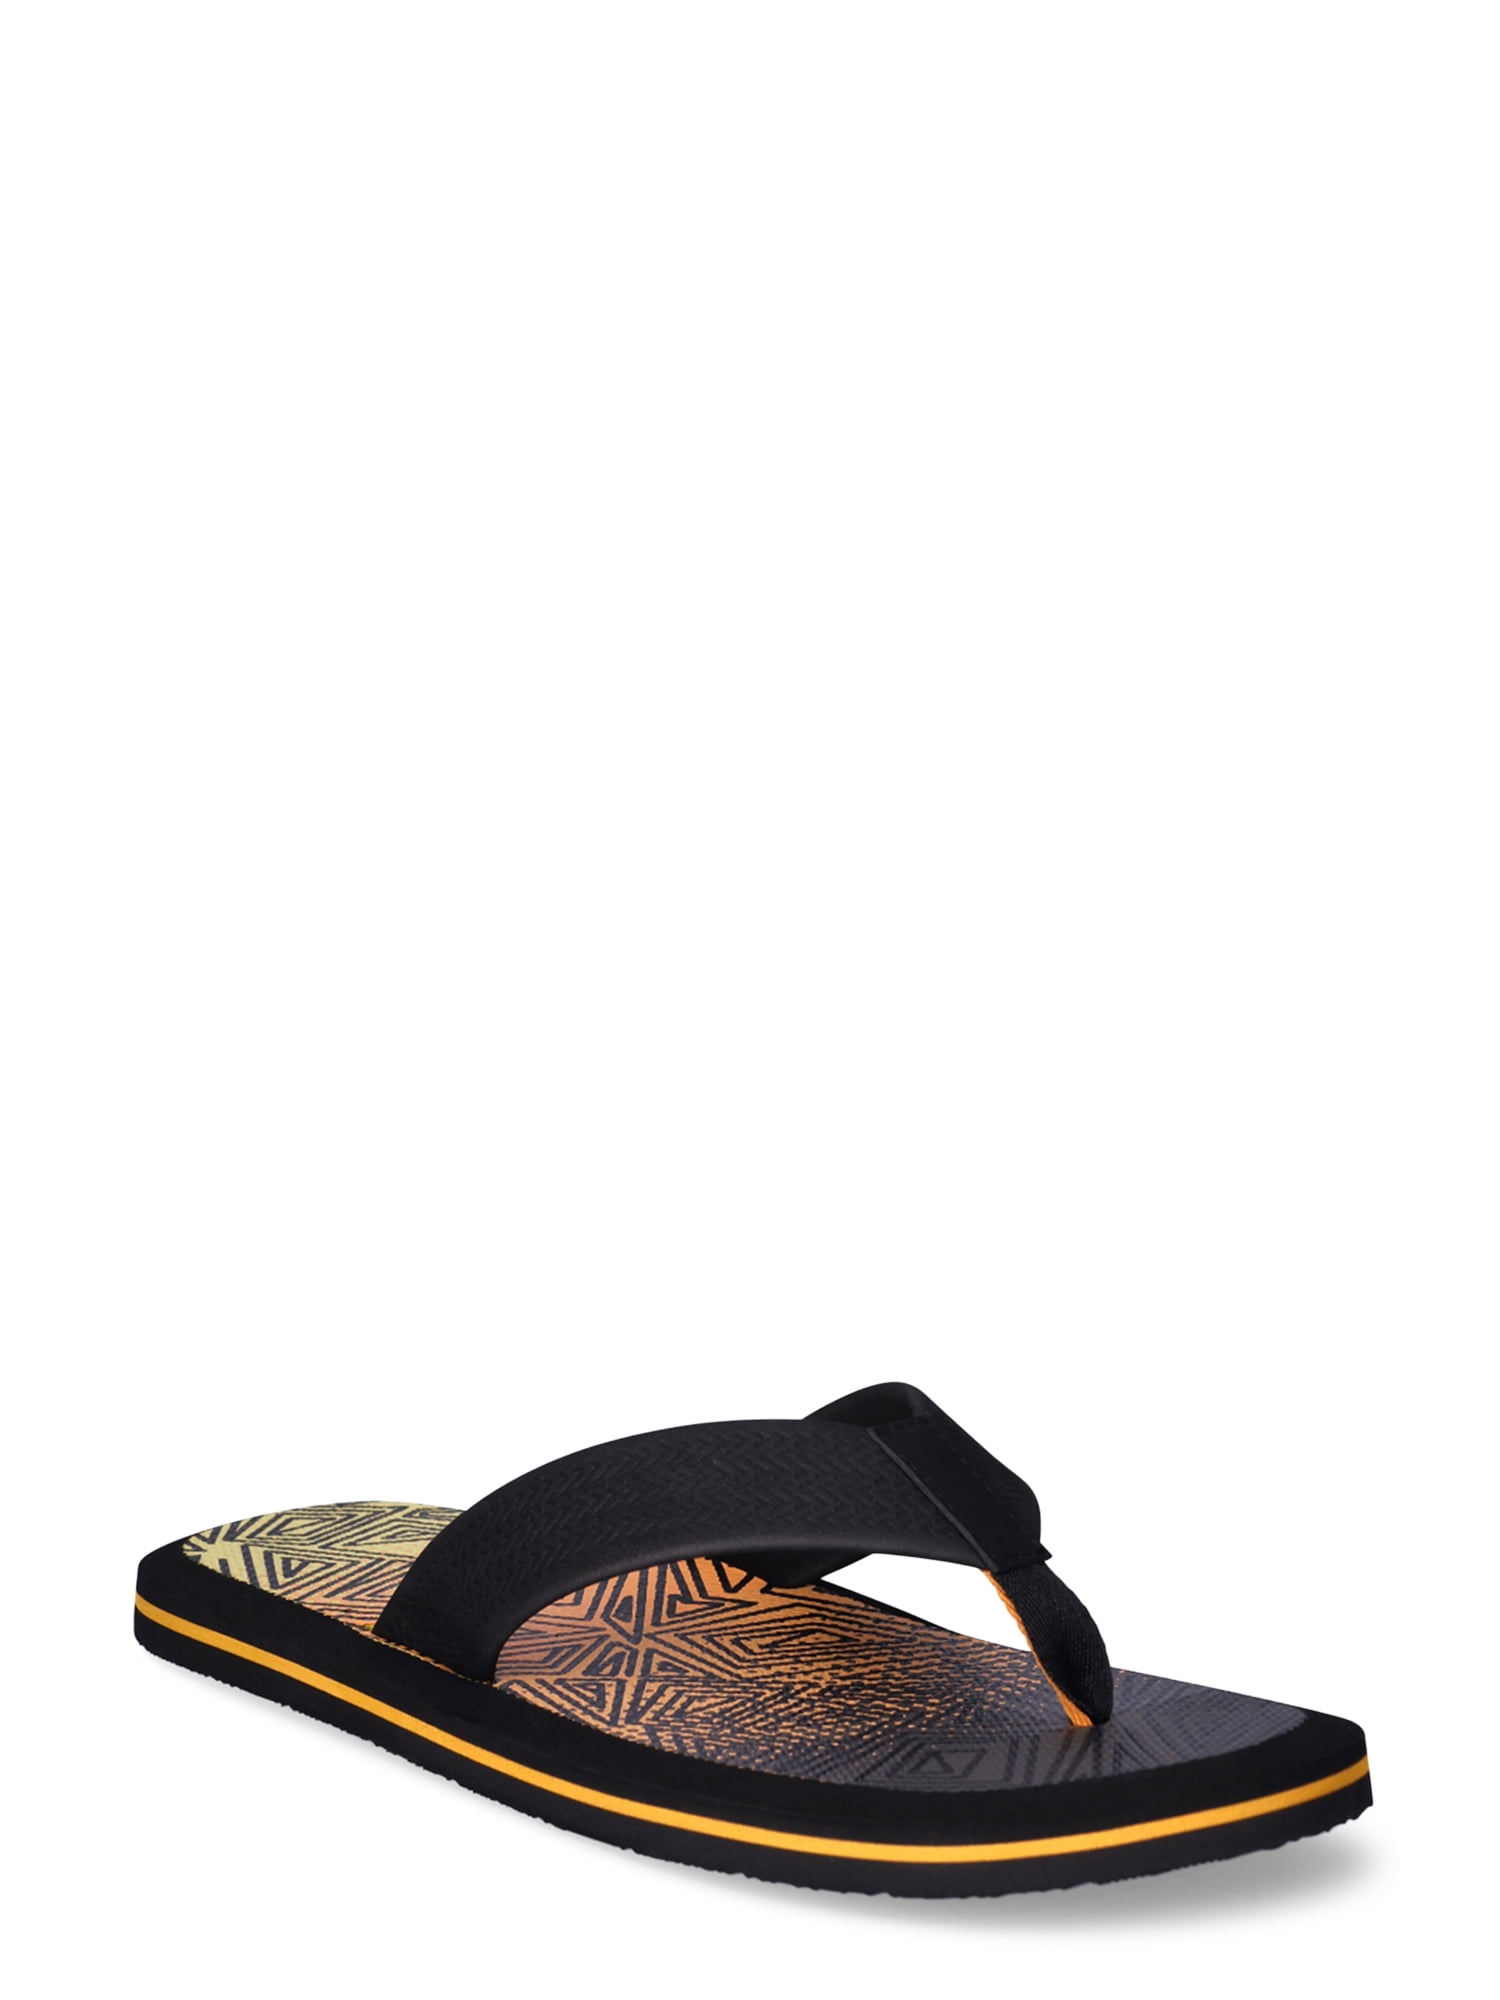 Find Your Perfect George Men's Ocean Flip Sandals - Walmart.com